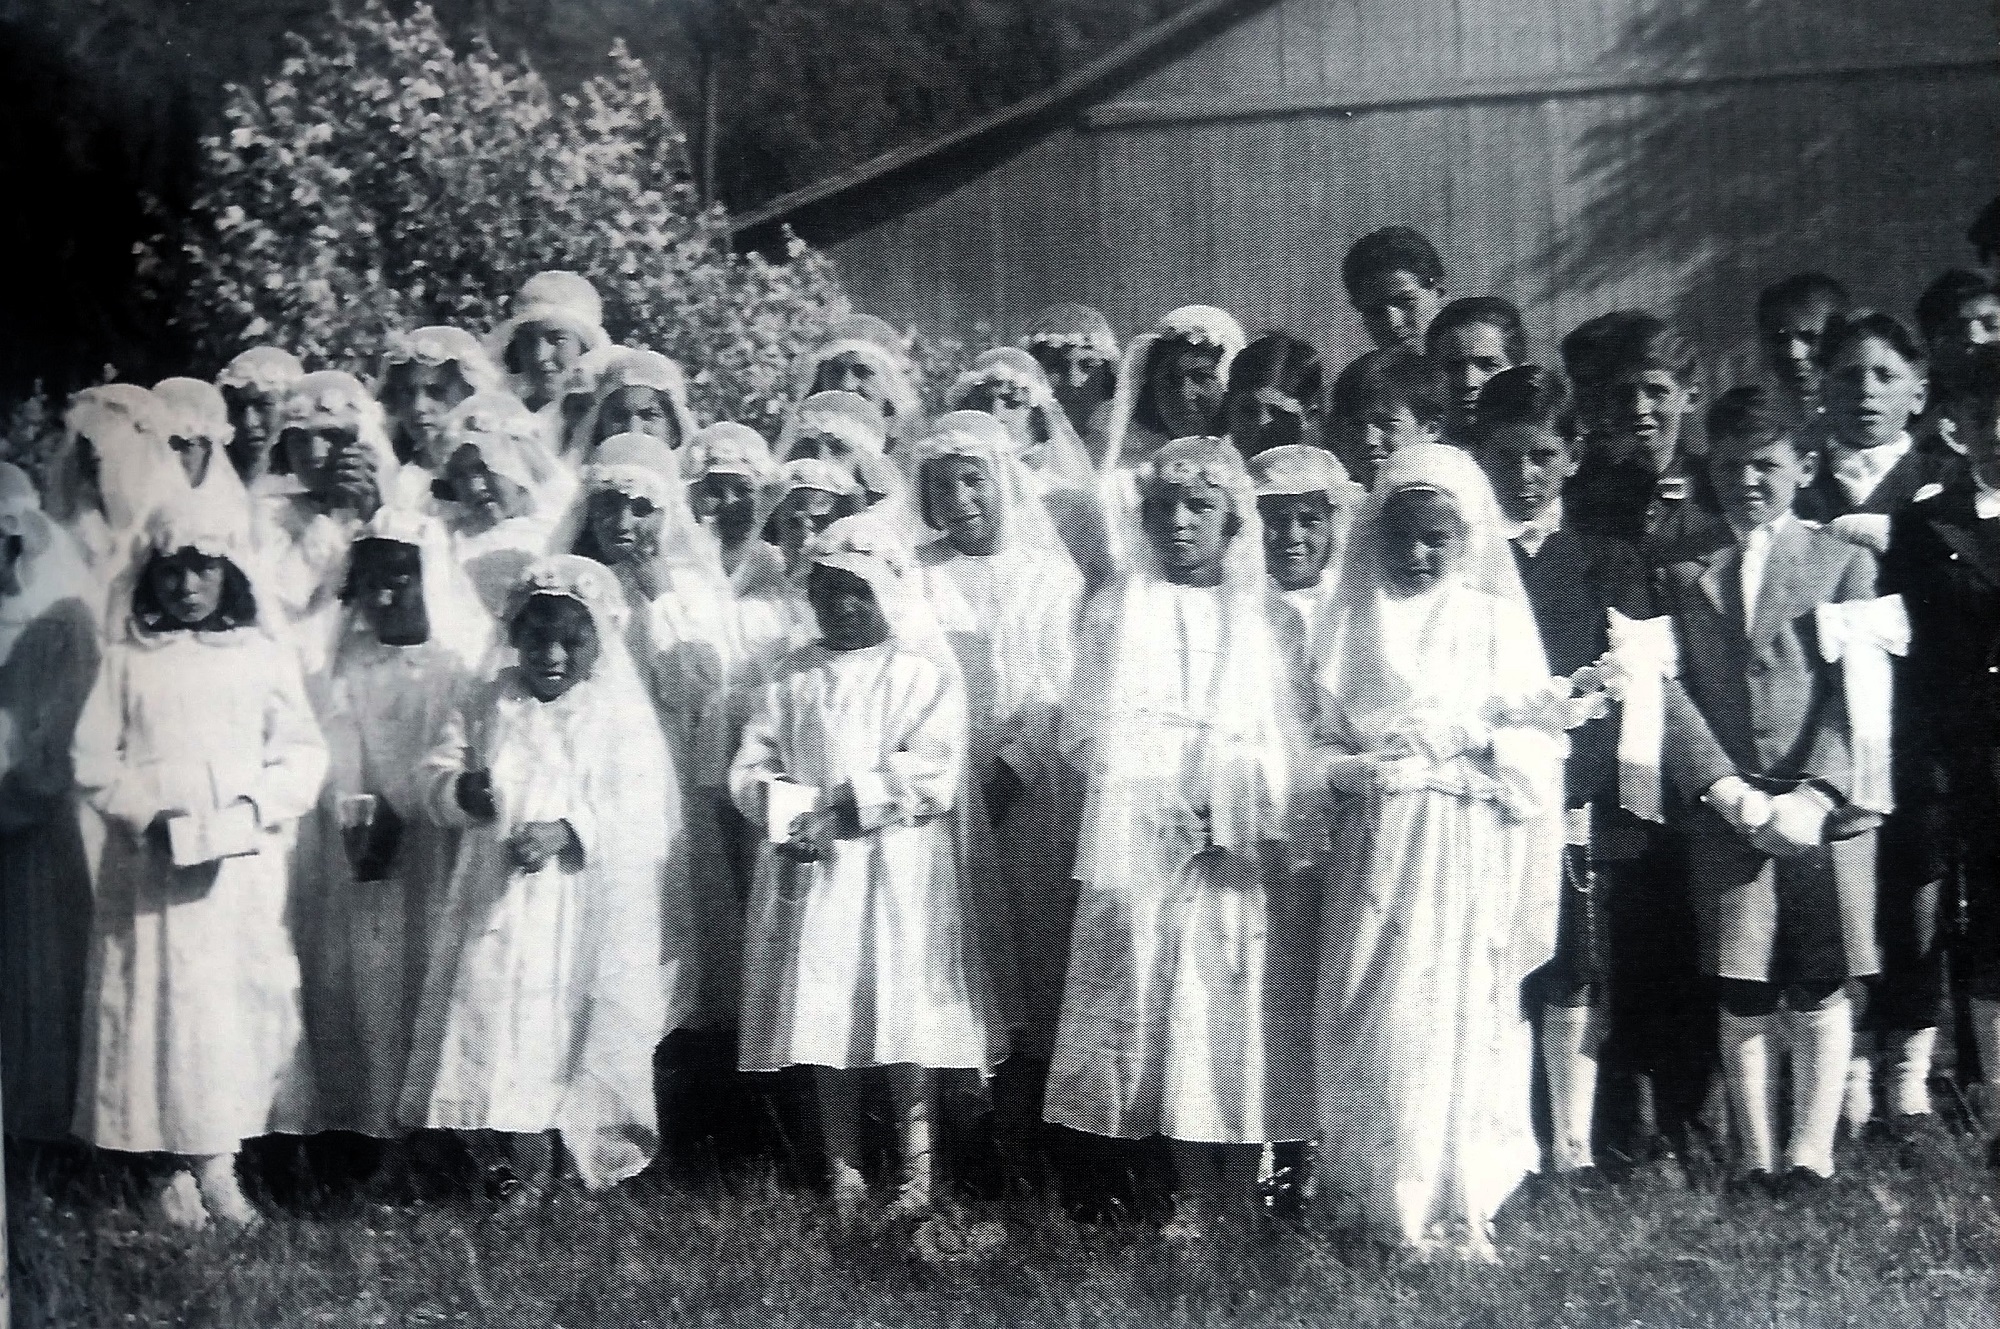 La infancia, la sencillez y la fe: el día que Maclovia tomó la comunión, en 1938. Es la que aparece adelante, en el extremo izquierdo - Foto: Gentileza Ana María de Mena.